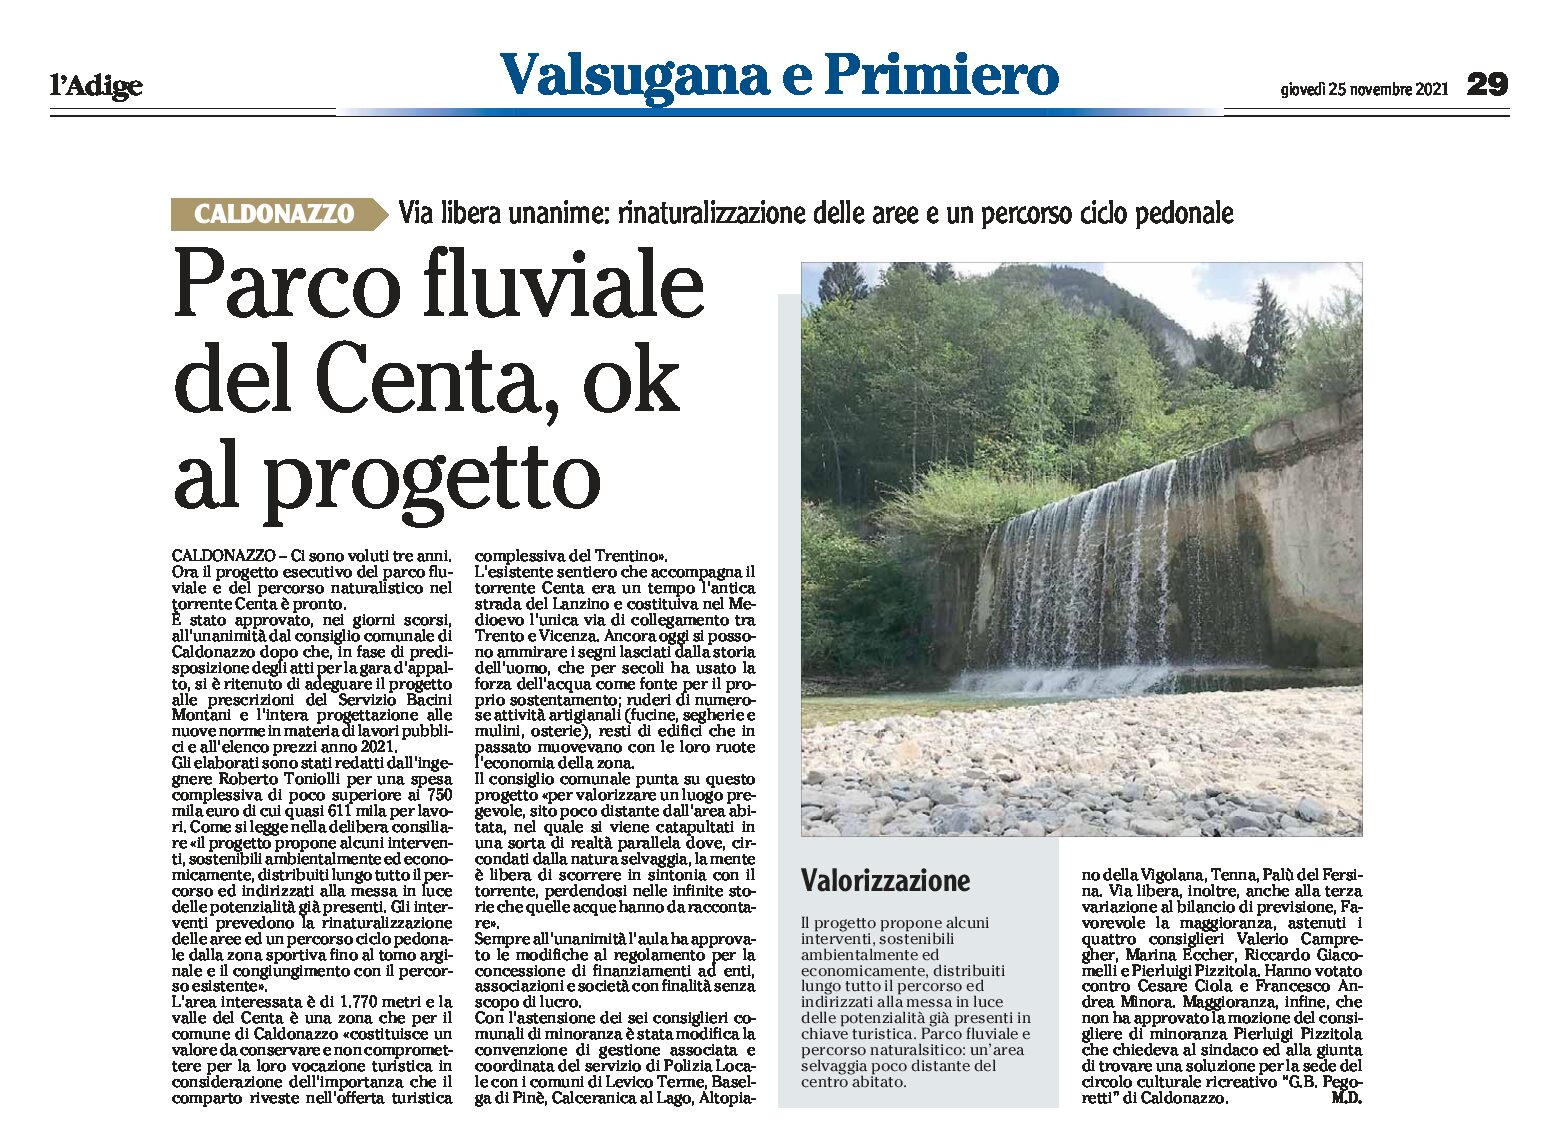 Caldonazzo: Parco fluviale del Centa, ok al progetto